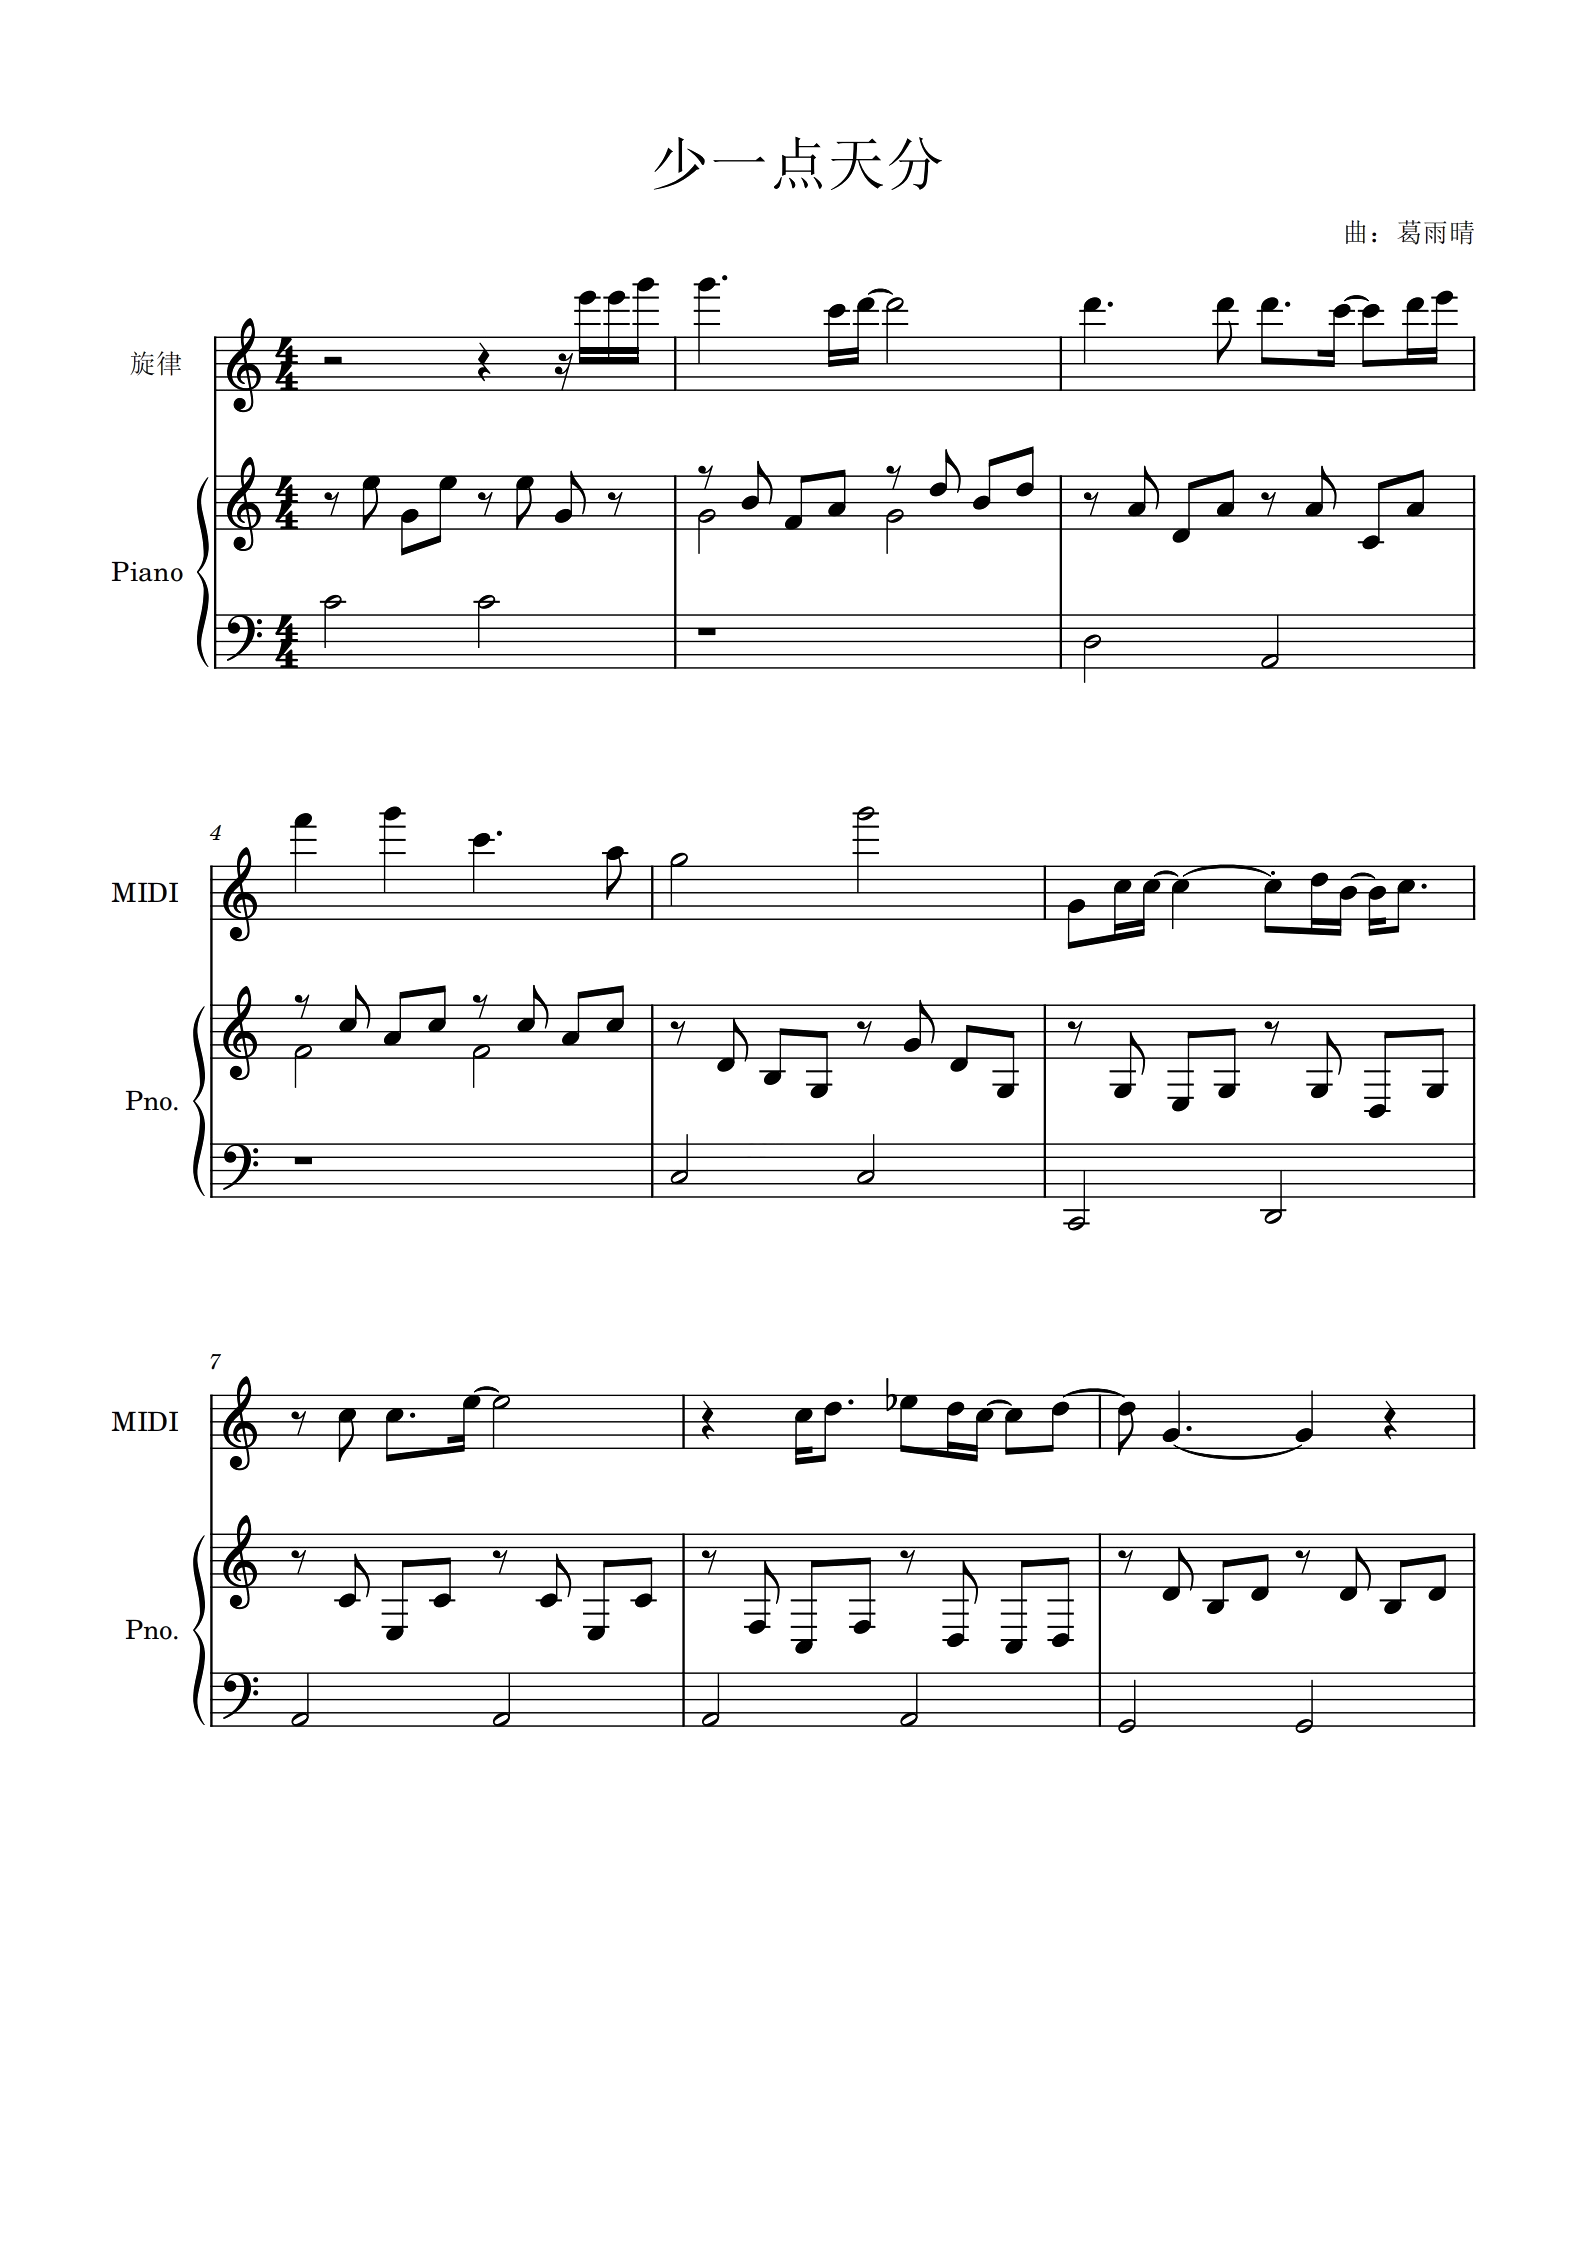 少一点天分-俏摩女抢头婚ED五线谱预览1-钢琴谱文件（五线谱、双手简谱、数字谱、Midi、PDF）免费下载